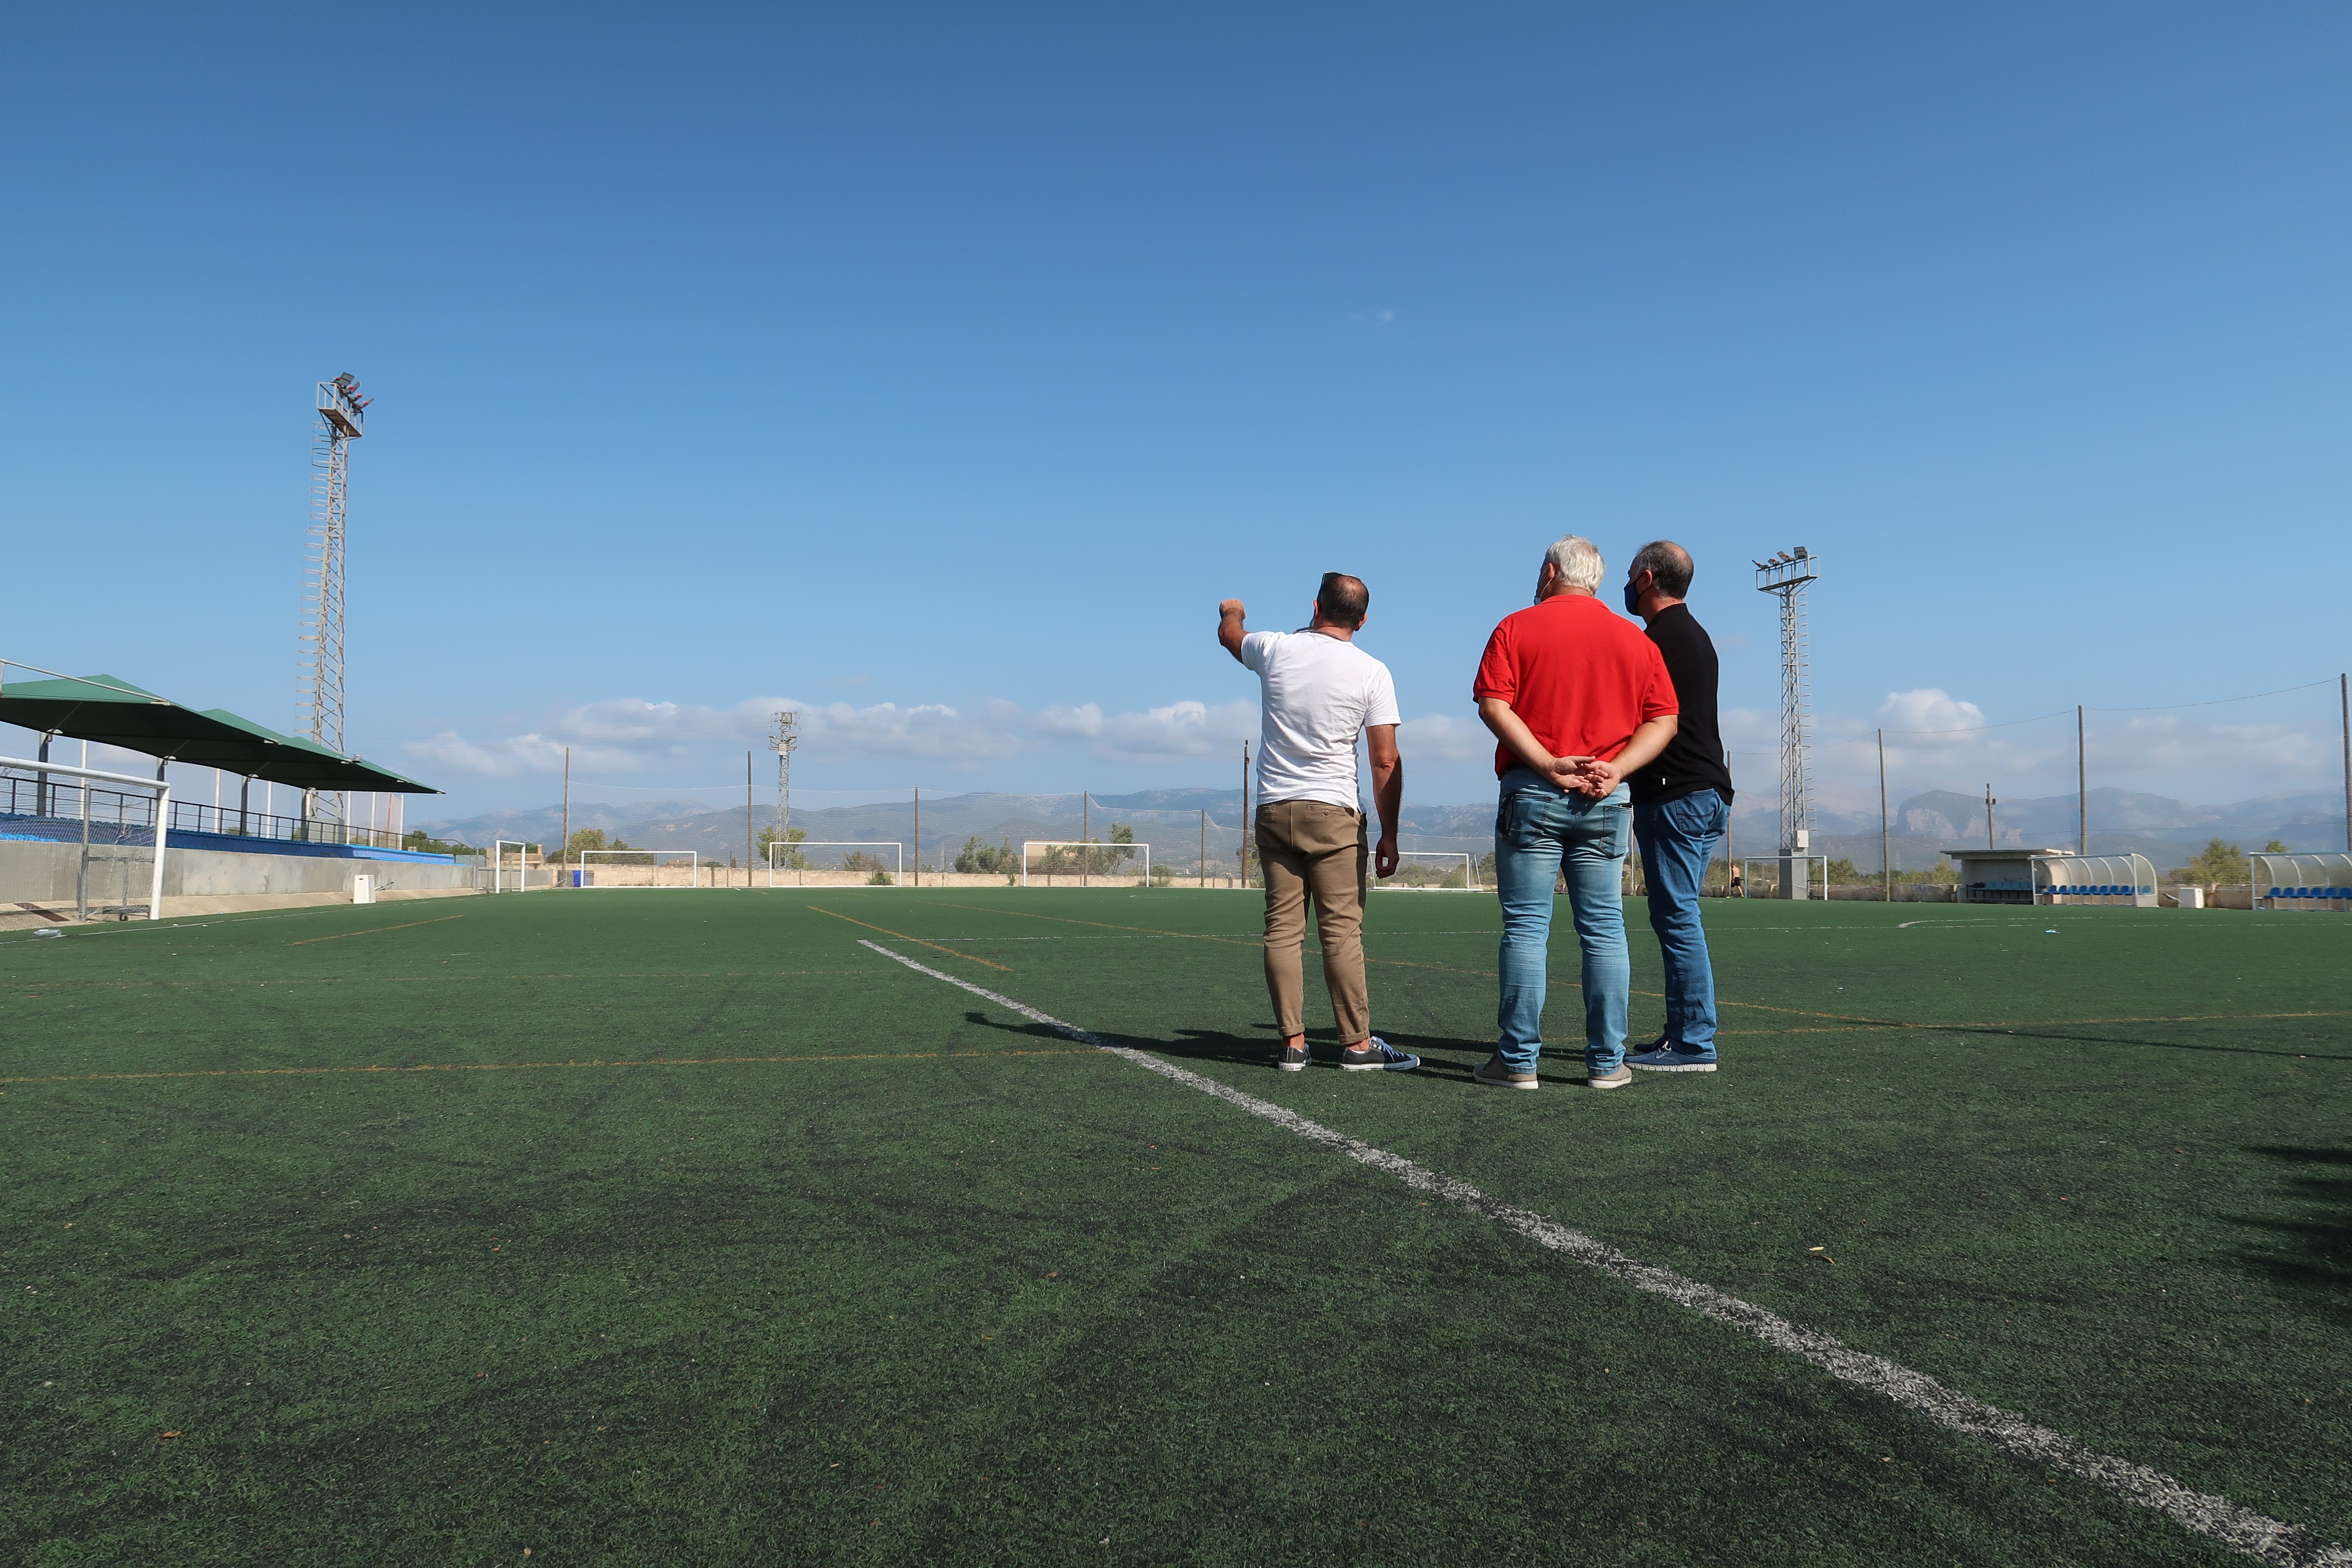 El Ajuntament de Santa Eugènia ha sustituido la iluminación de las cuatro torres de este campo de futbol por uno de más sostenible gracias a la aportación del Consell de Mallorca.